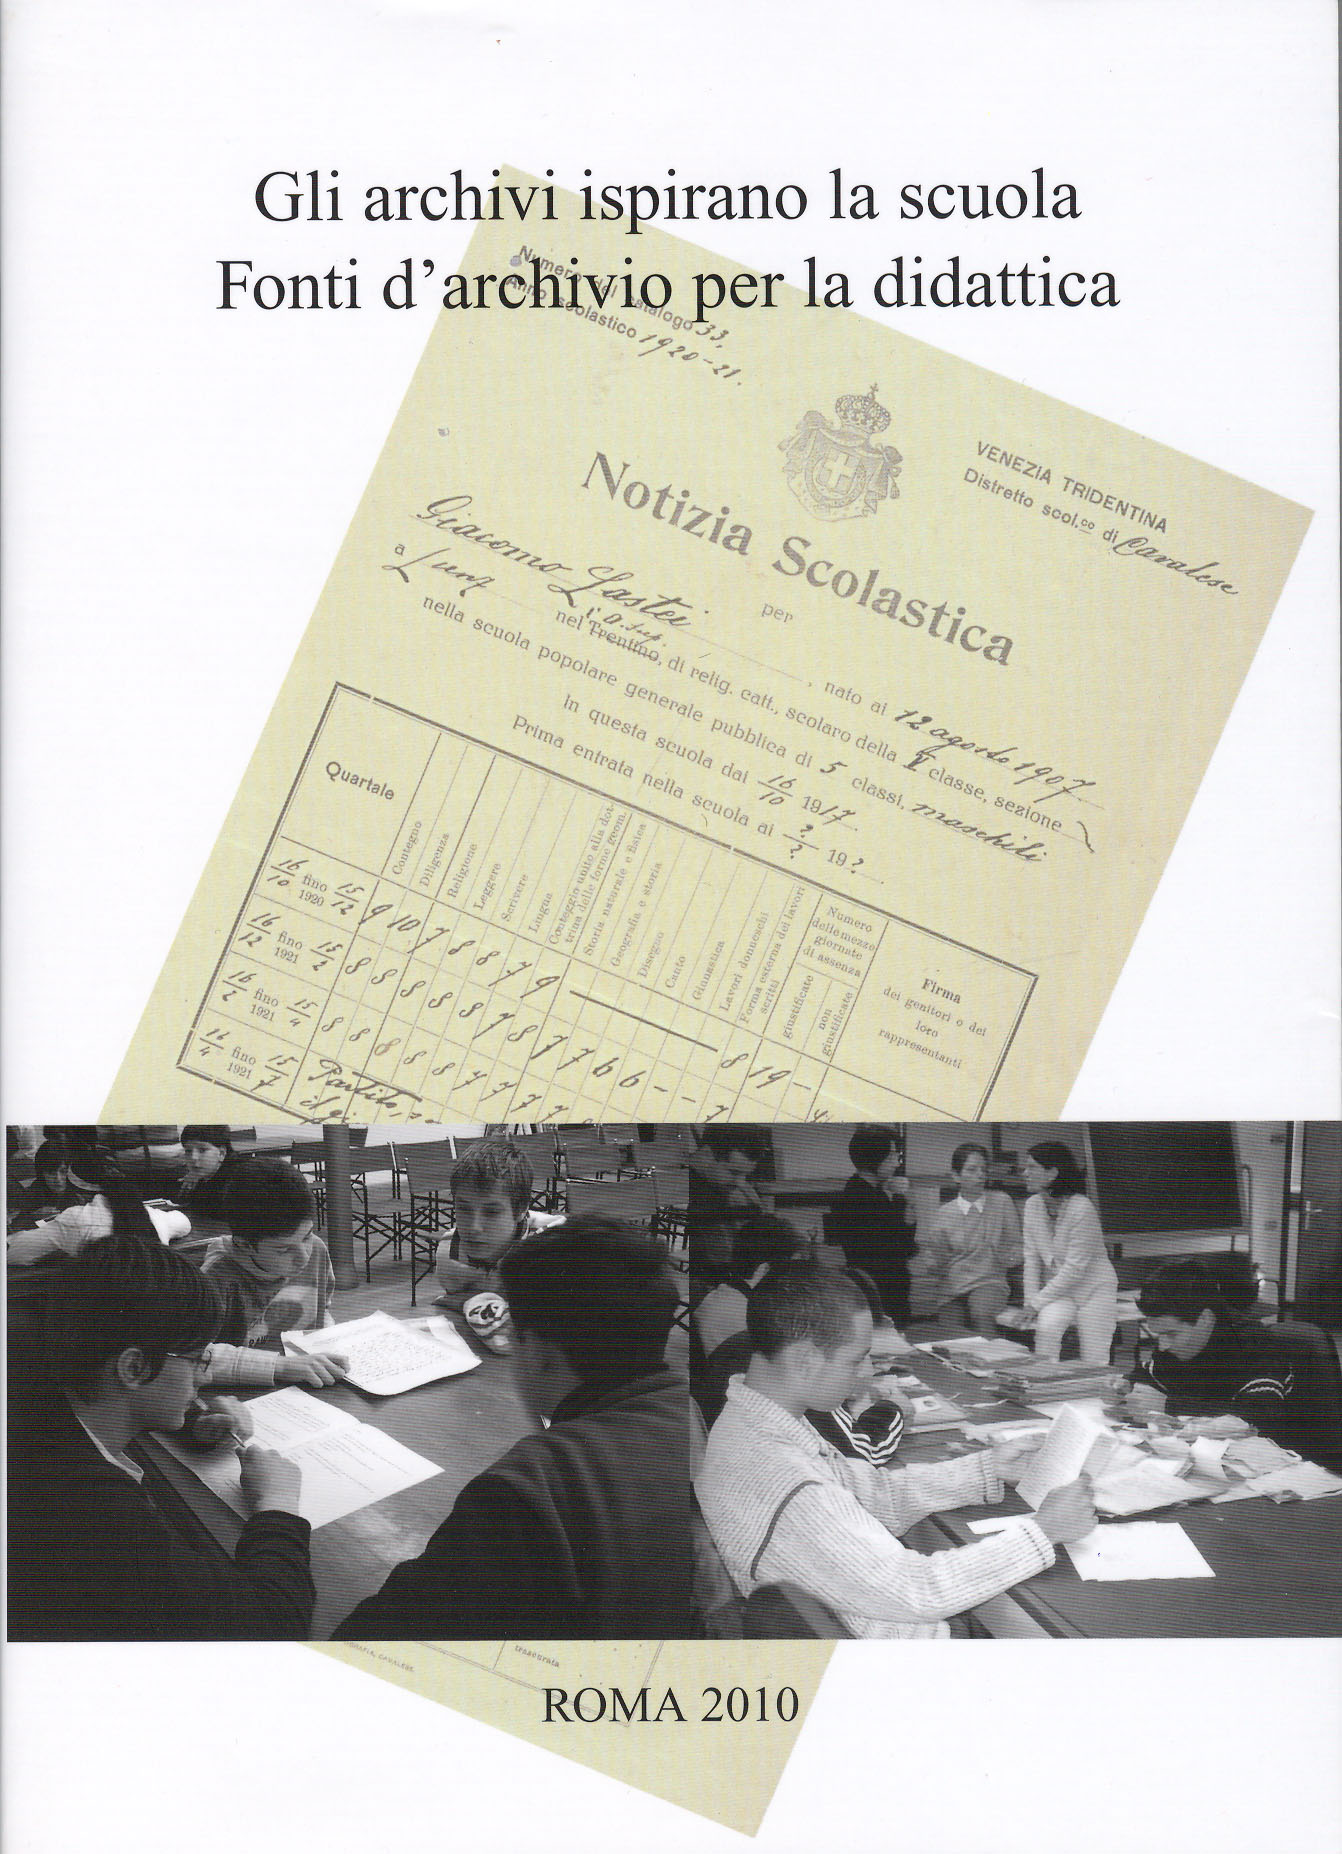 Gli archivi ispirano la scuola (Roma 2010)